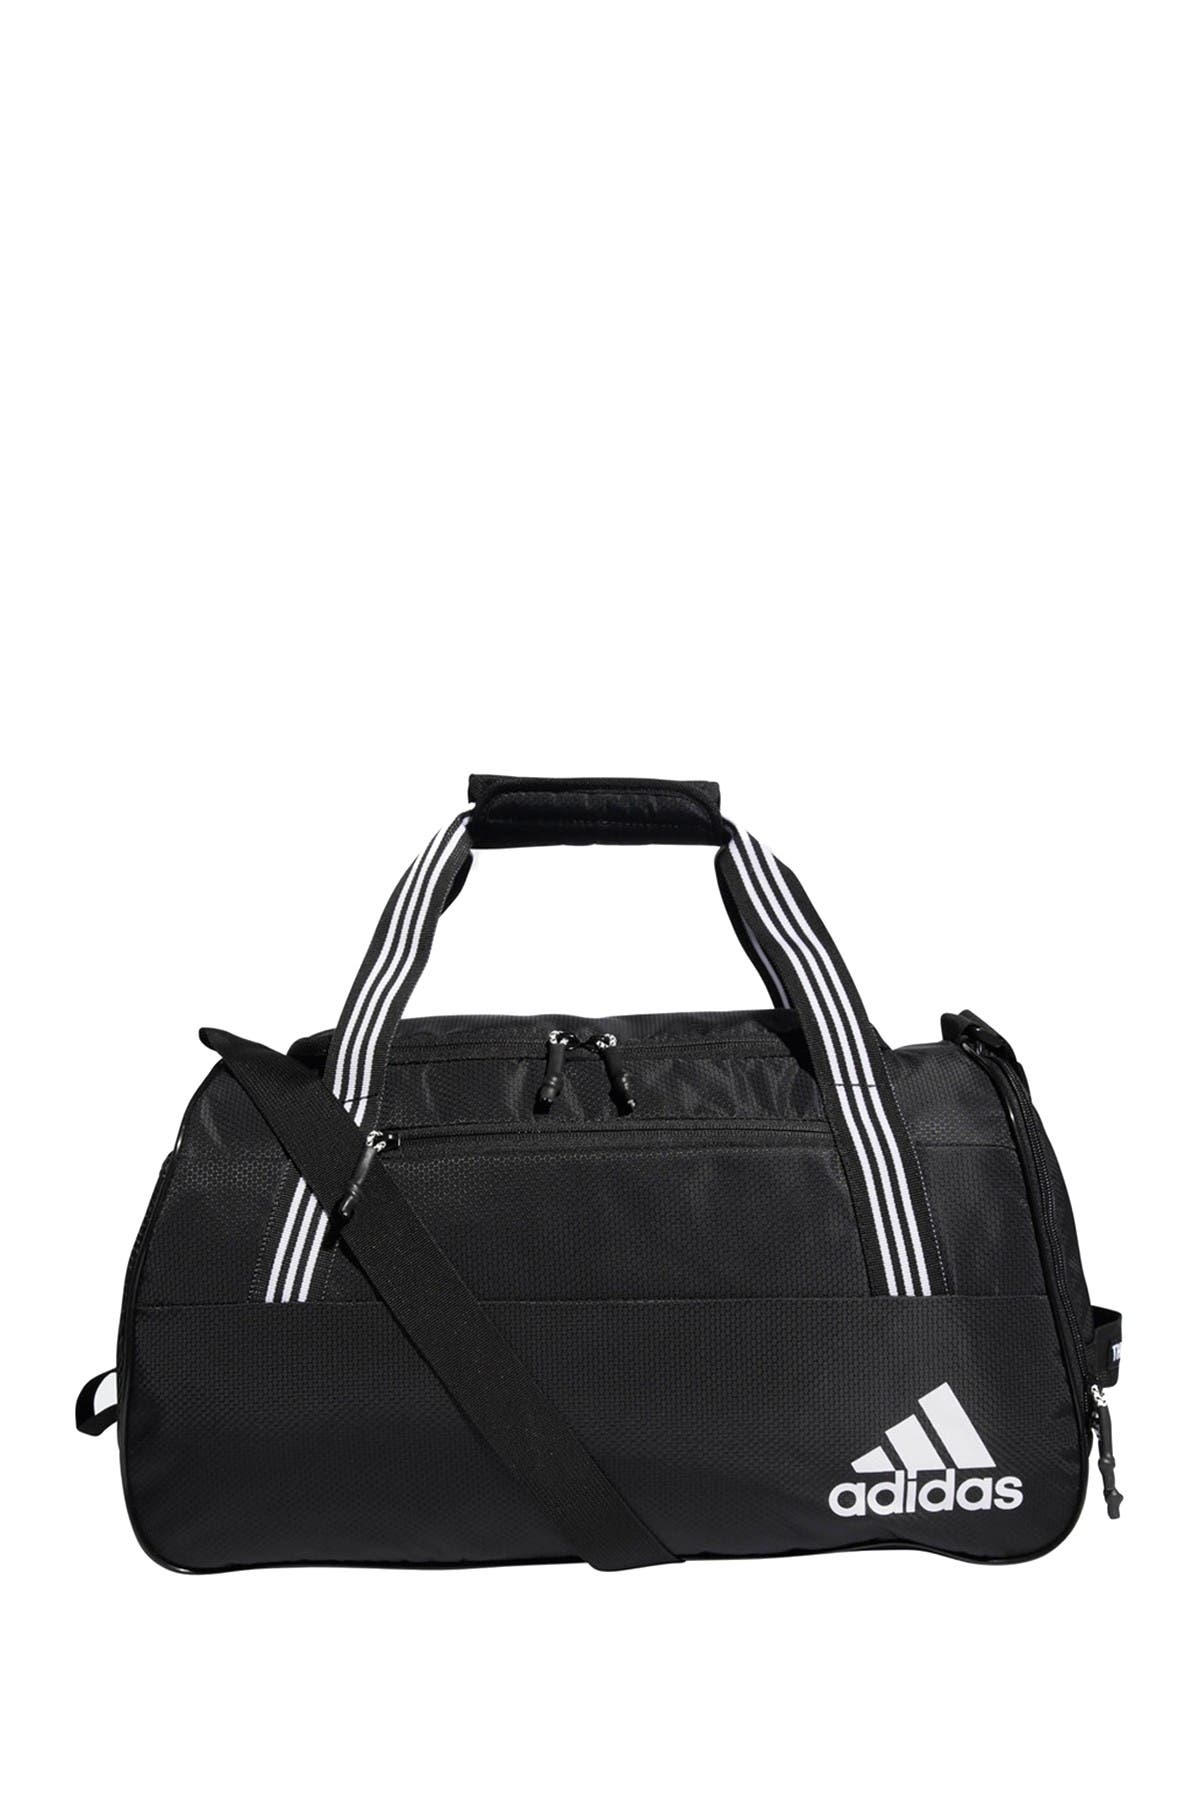 adidas squad bag